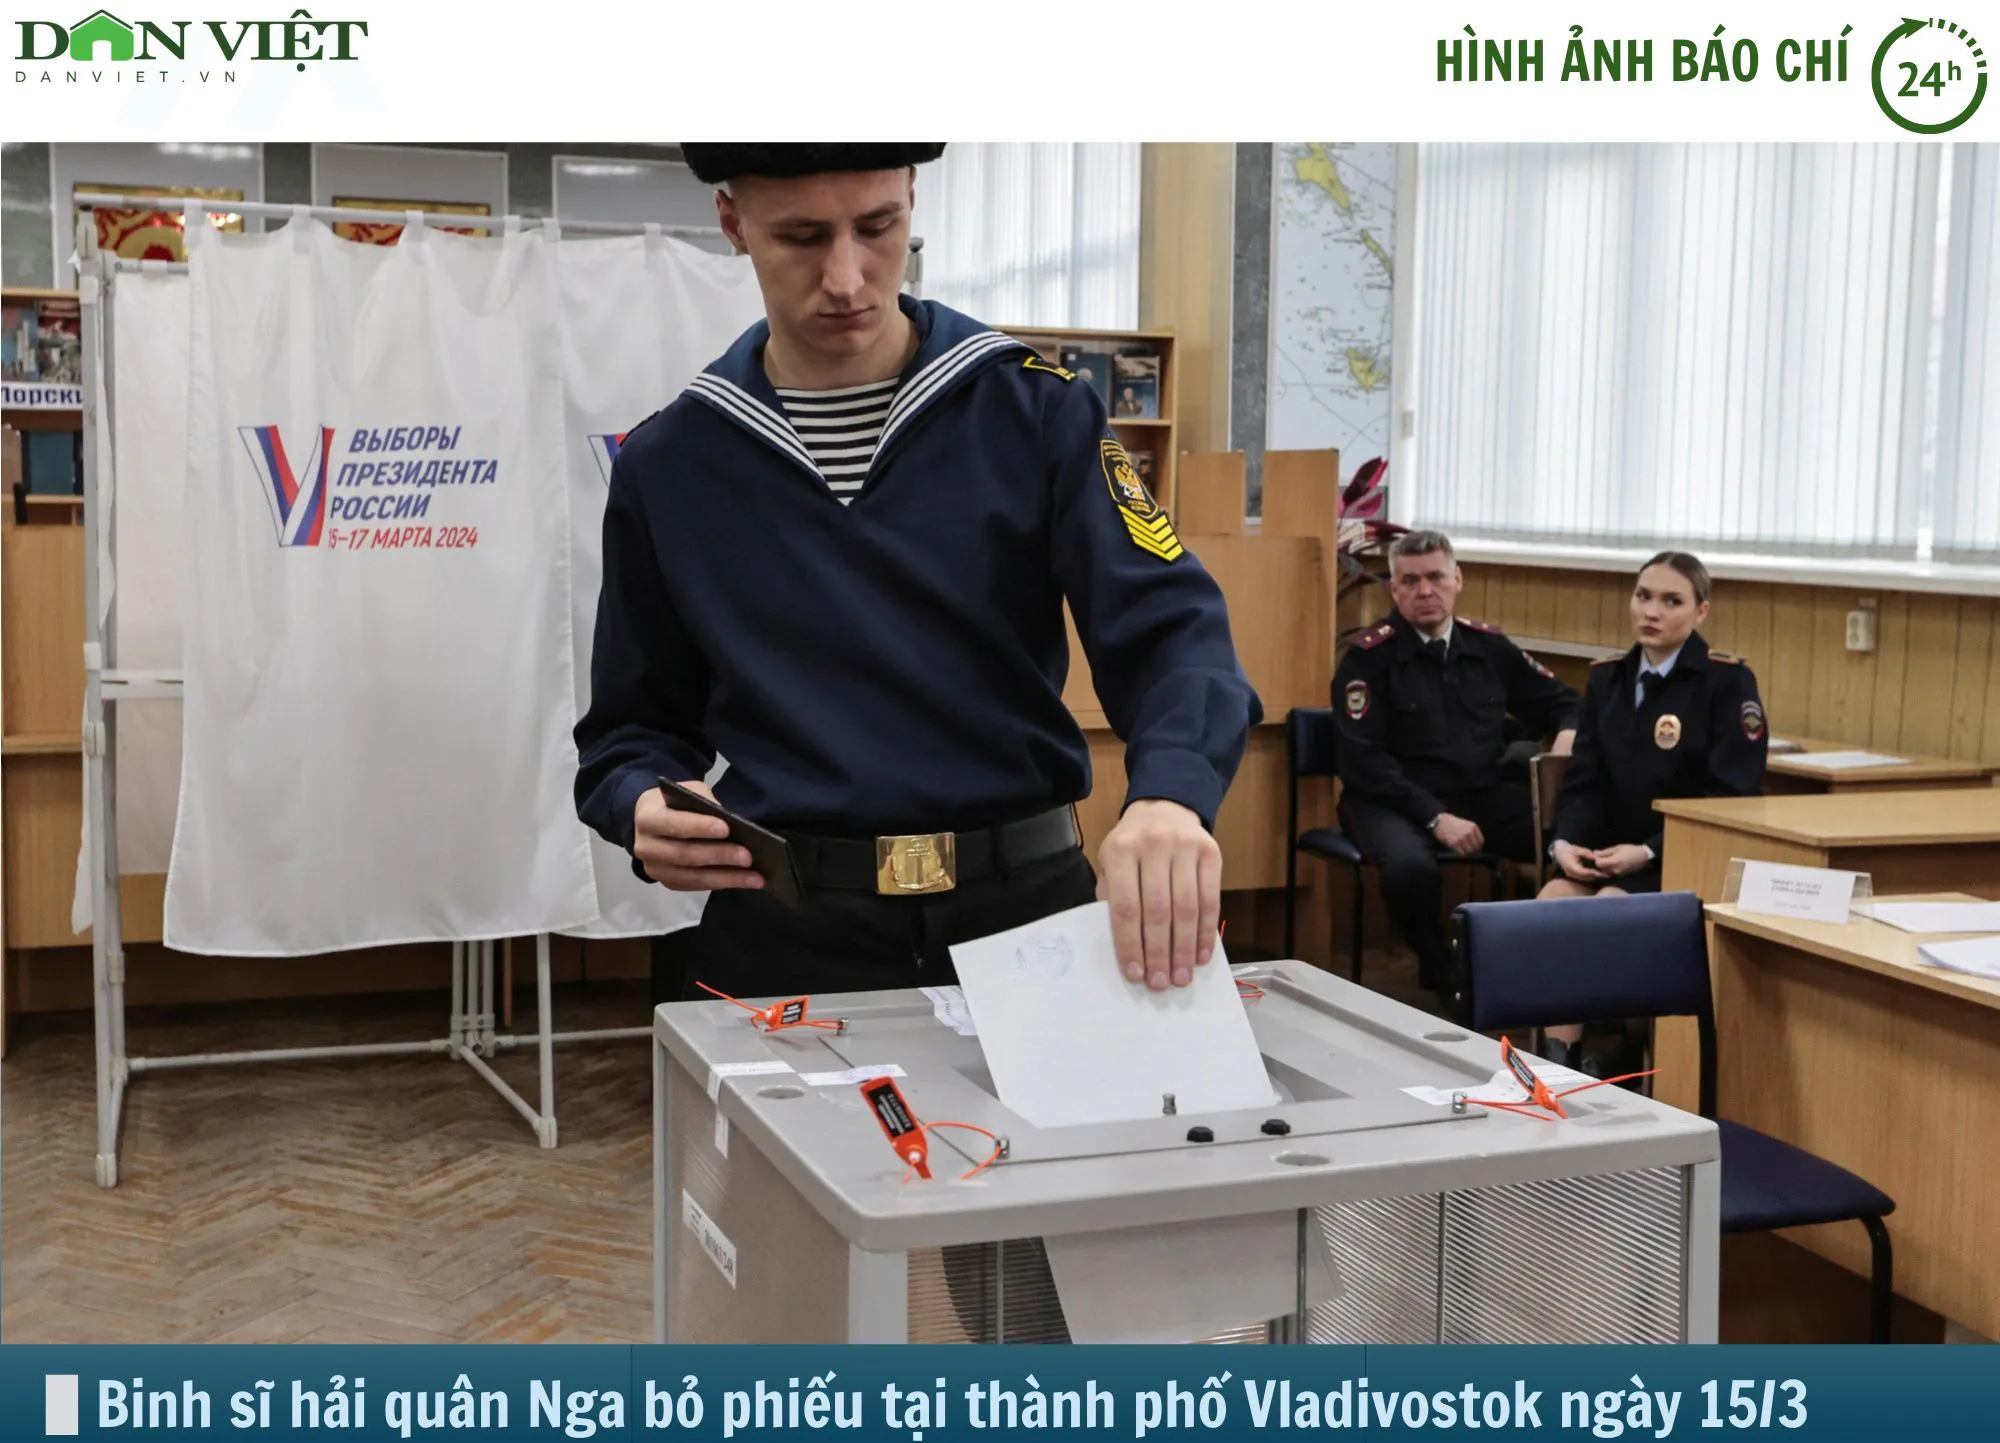 Hình ảnh báo chí 24h: Người Nga đi bầu Tổng thống- Ảnh 1.